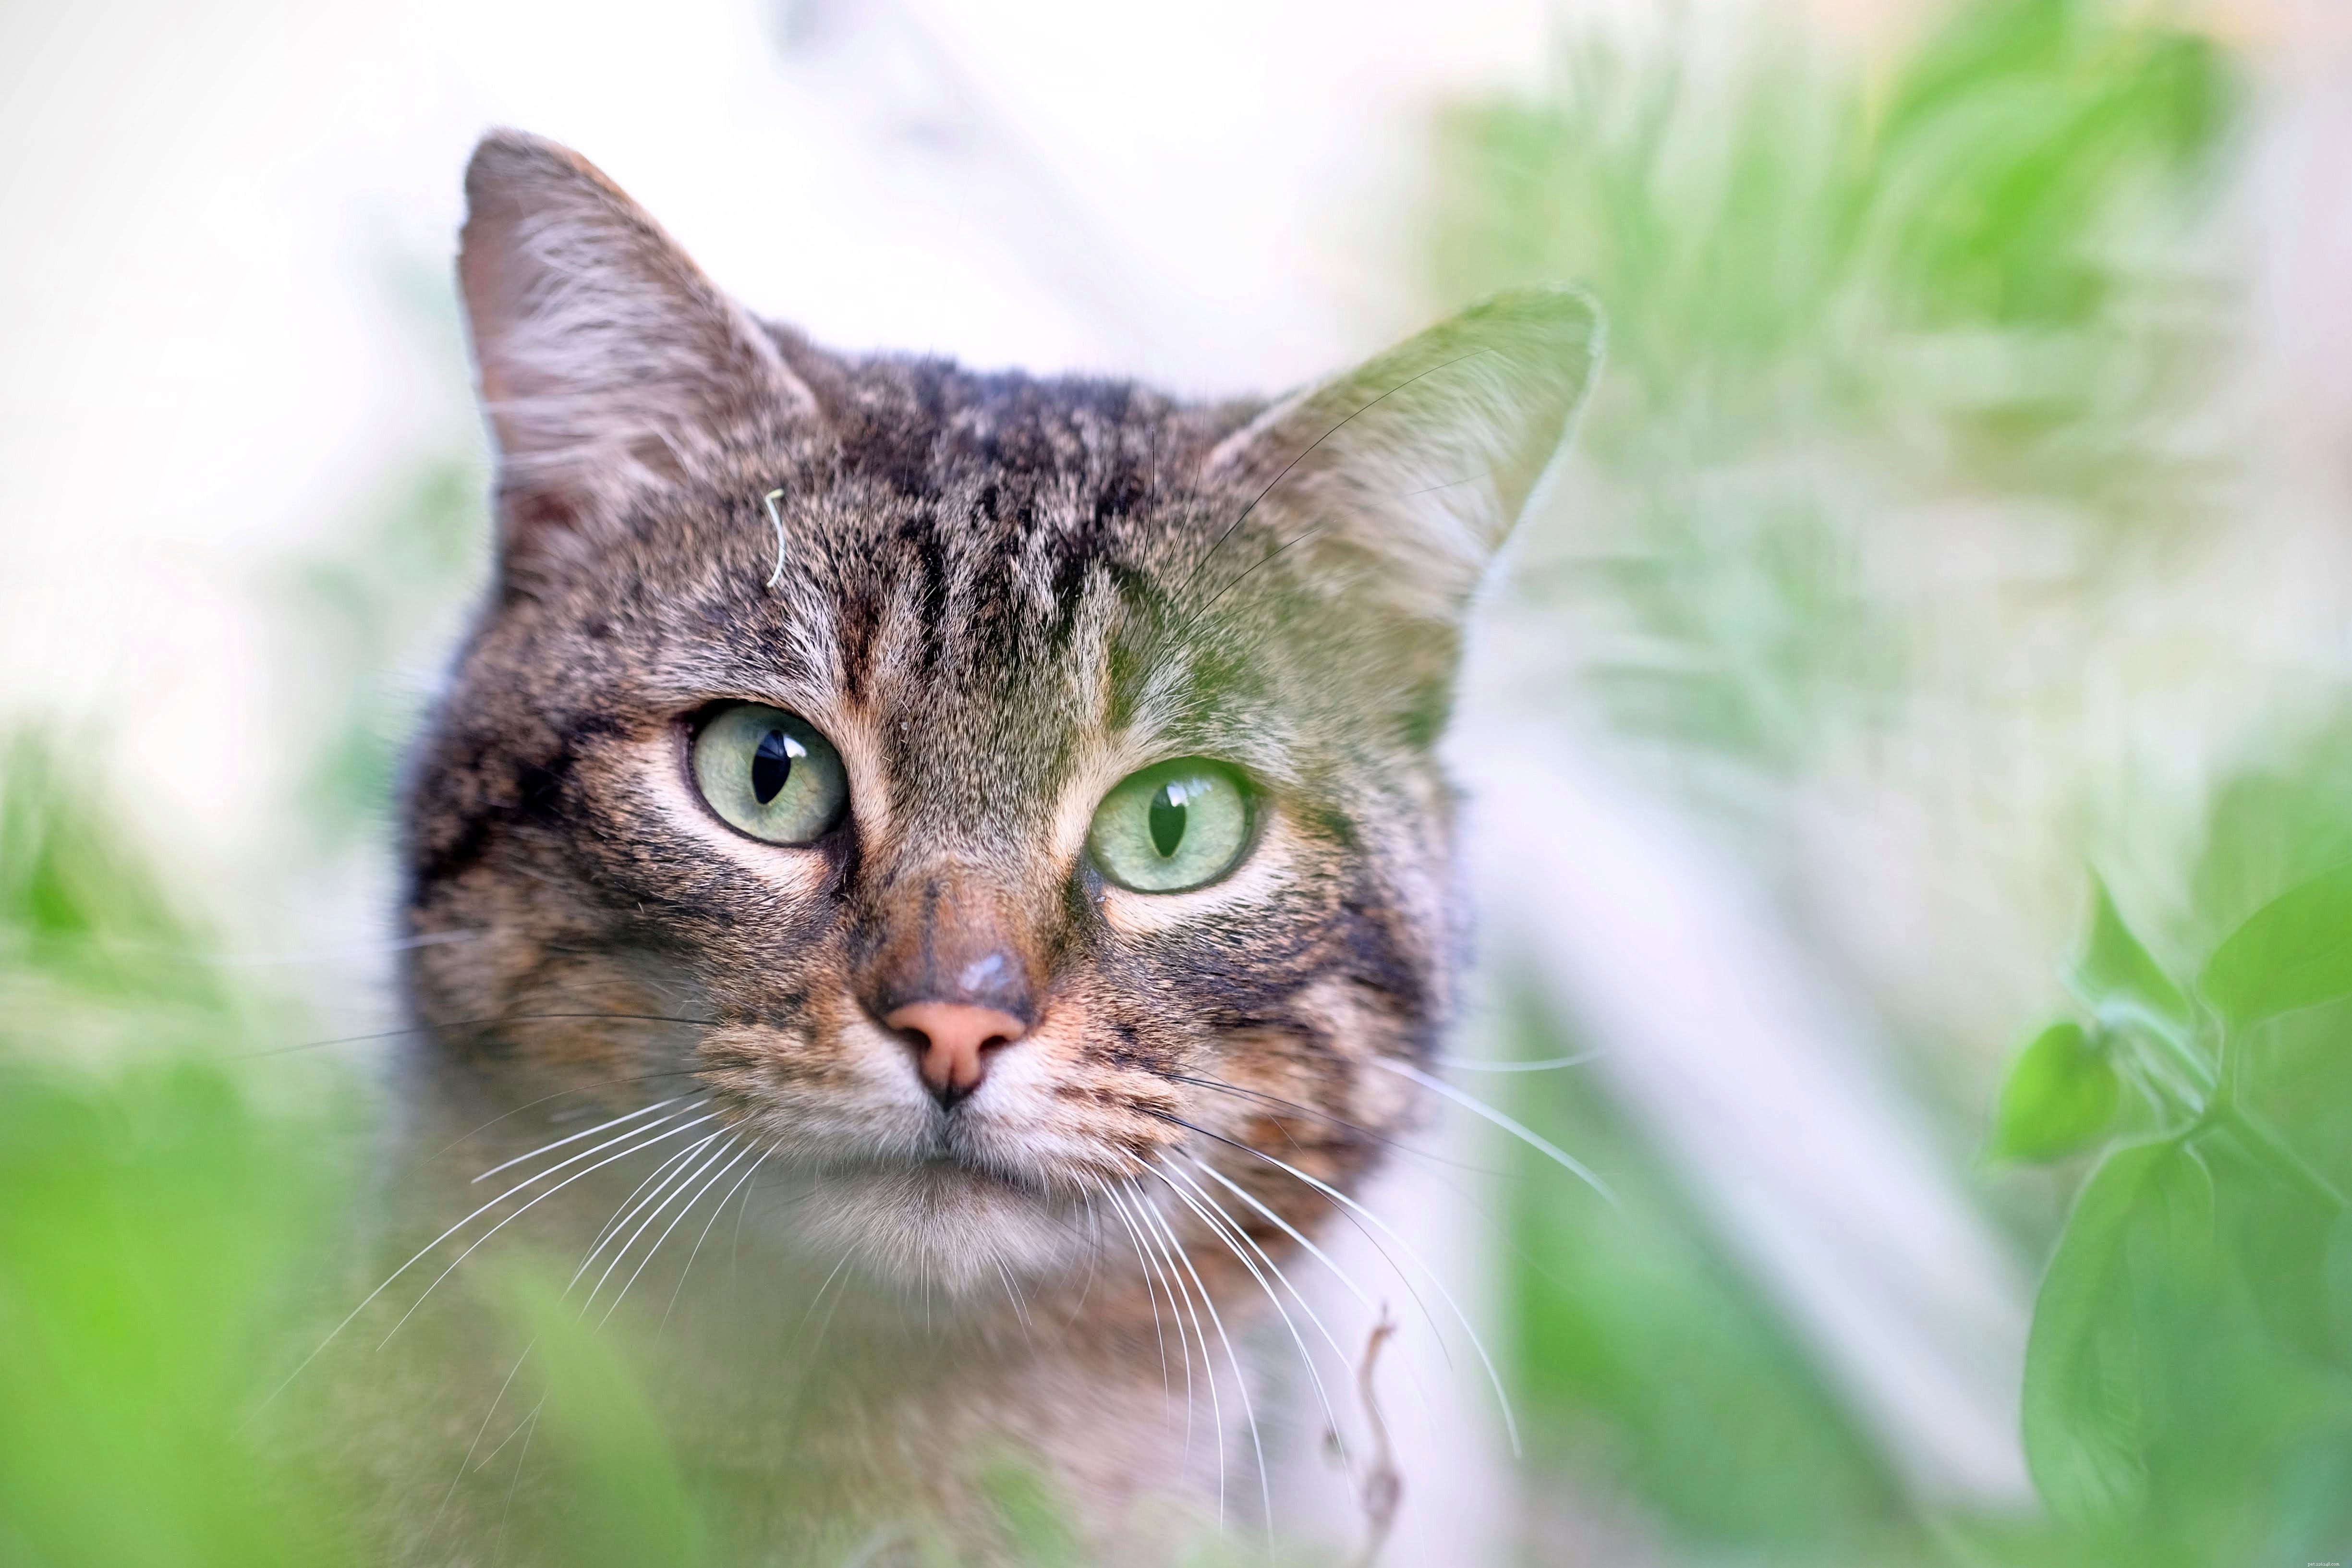 Come gli esseri umani, i gatti possono essere allergici al polline, ma la febbre da fieno è molto difficile da diagnosticare nei gatti e provoca sintomi molto diversi 